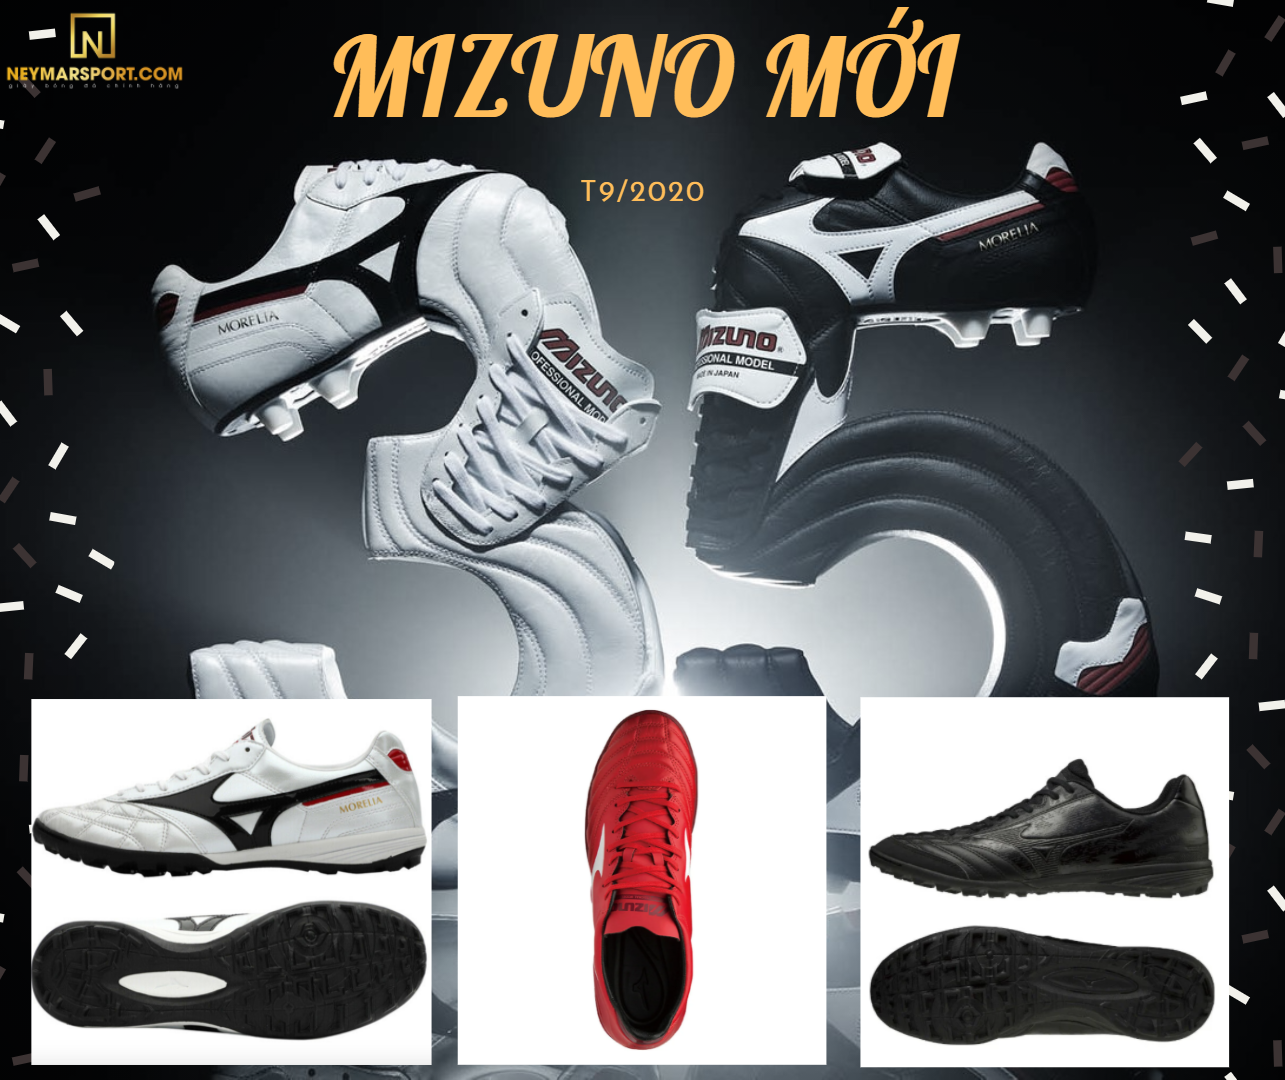 Giới thiệu những mẫu giày đá bóng cỏ nhân tạo mới của Mizuno vừa cập bến tại Neymarsport T9/2020